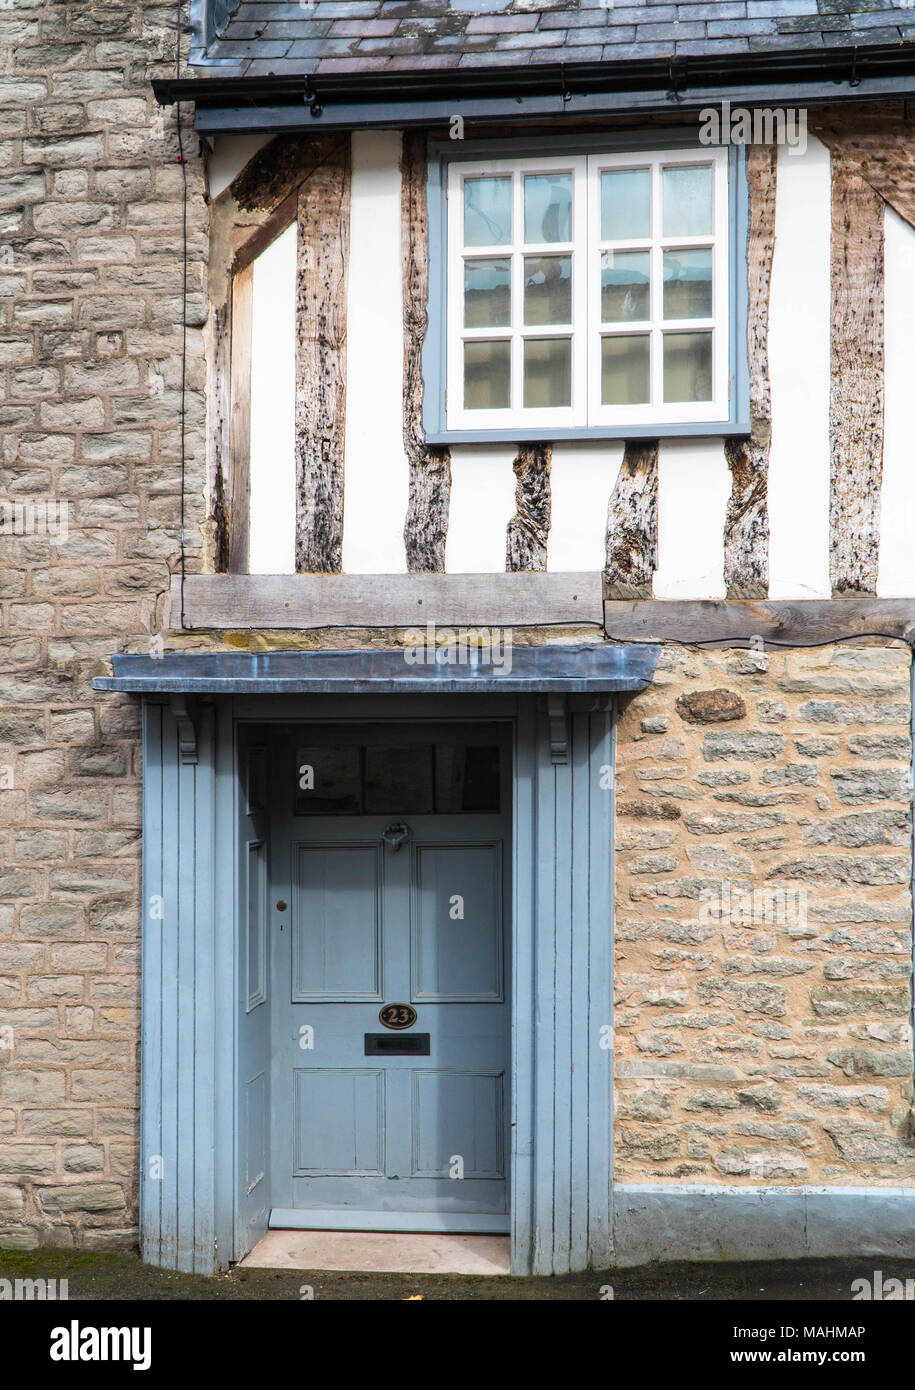 Porte d'immeuble en pierre traditionnelle britannique. Hay-on-Wye Herefordshire UK. Mars 2018 Banque D'Images